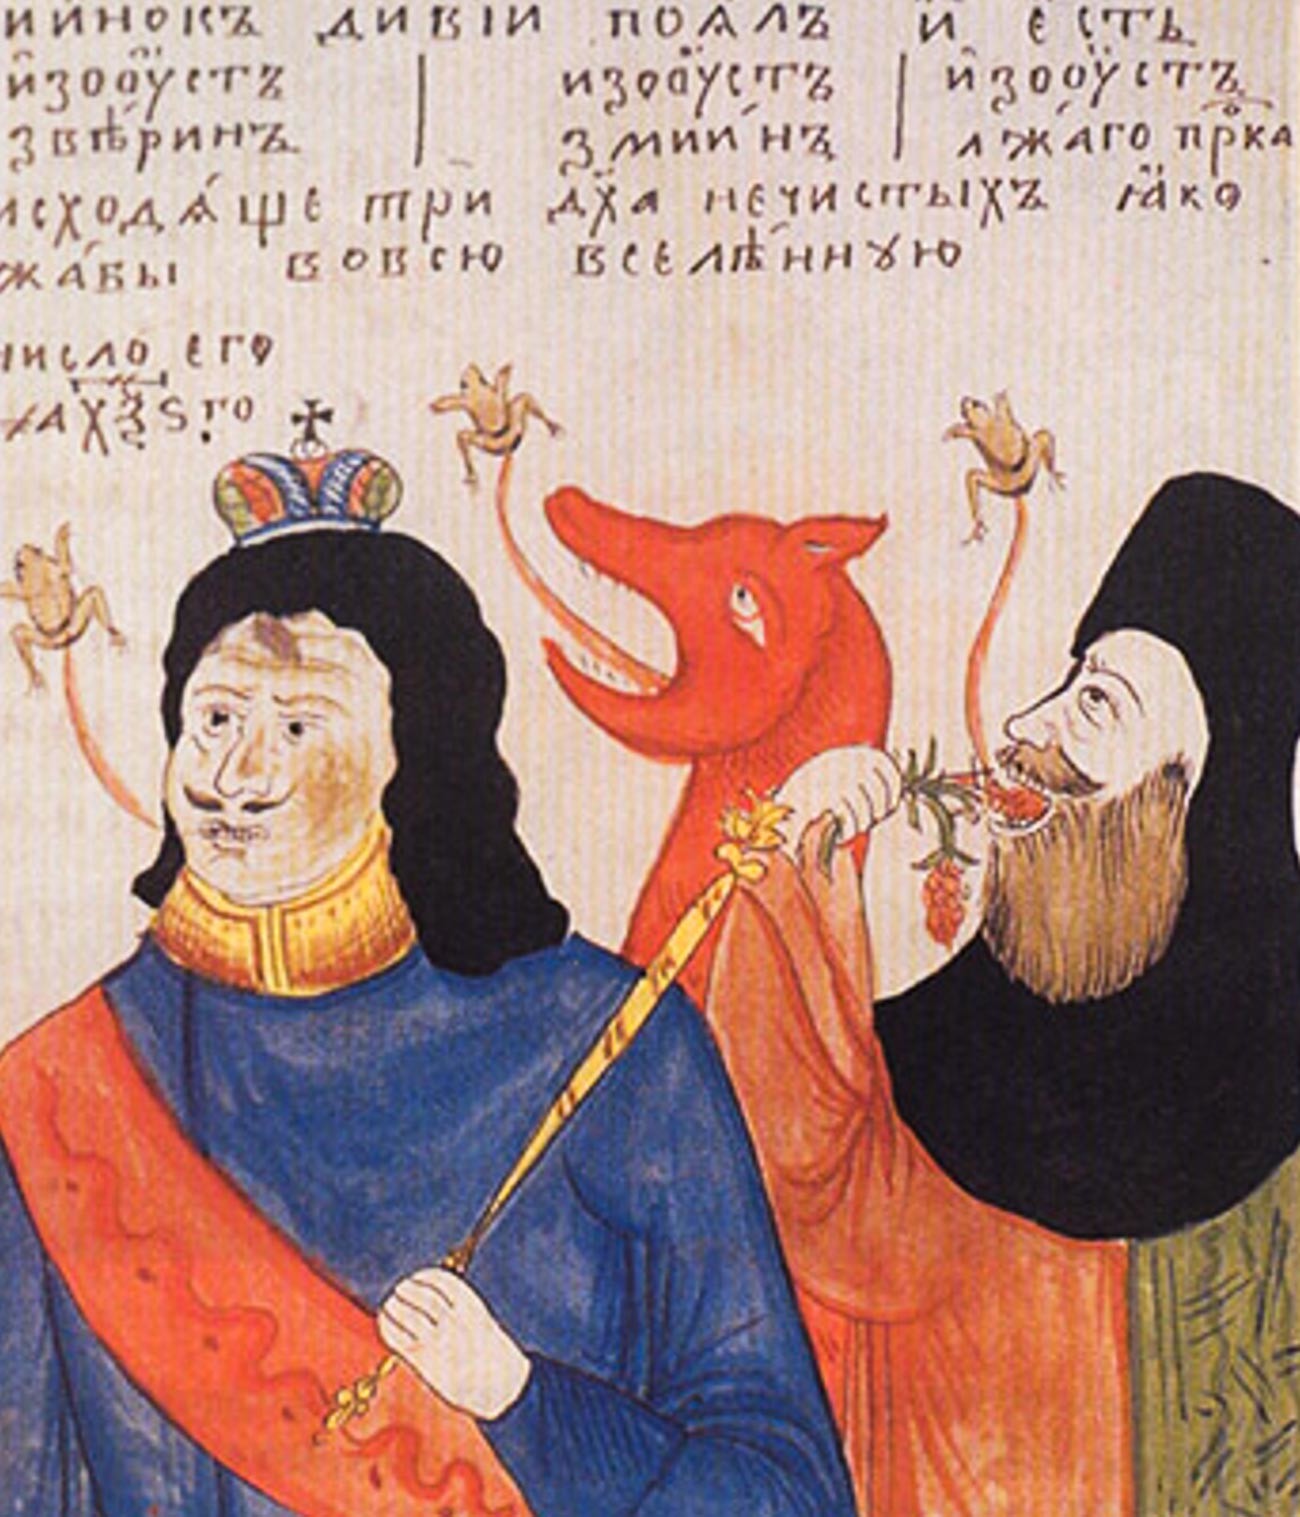 Eine Karikatur der Altgläubigen, die Zar Peter als Antichrist darstellt.